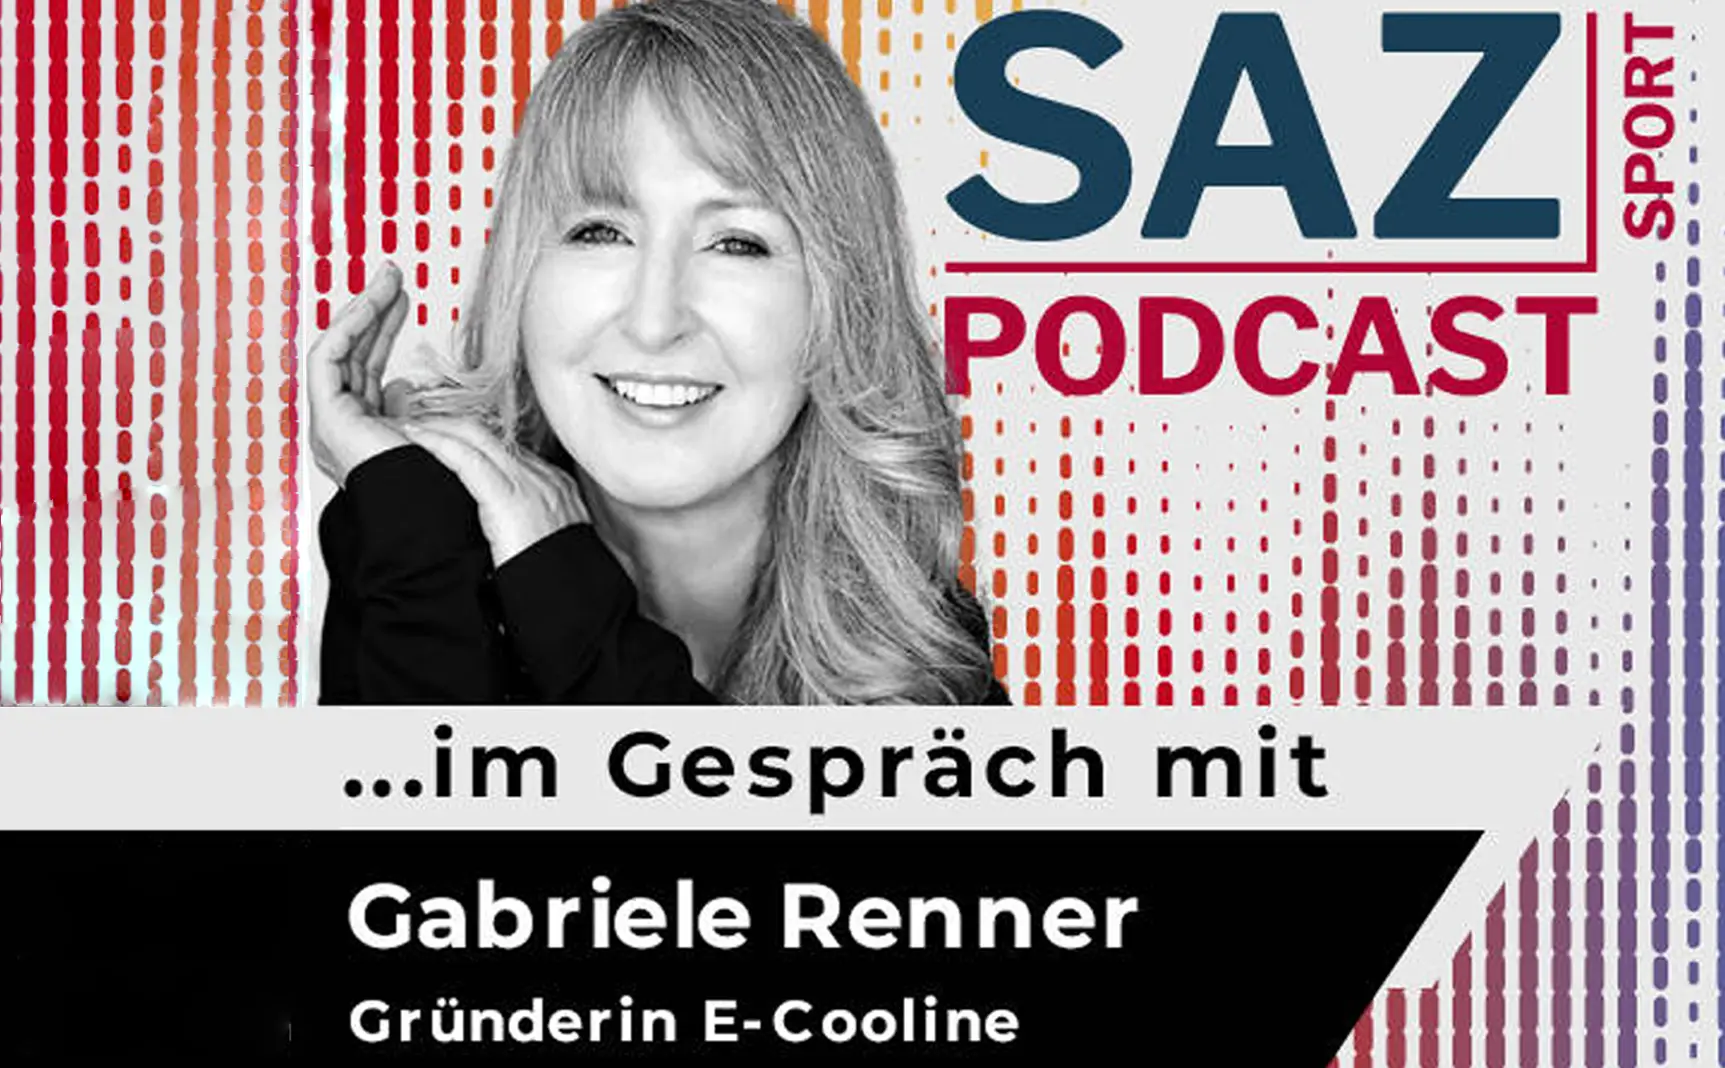 SAZ Podcast Logo mit Gabriele Renner - SAZ Sport Interviewt Gabriele Renner